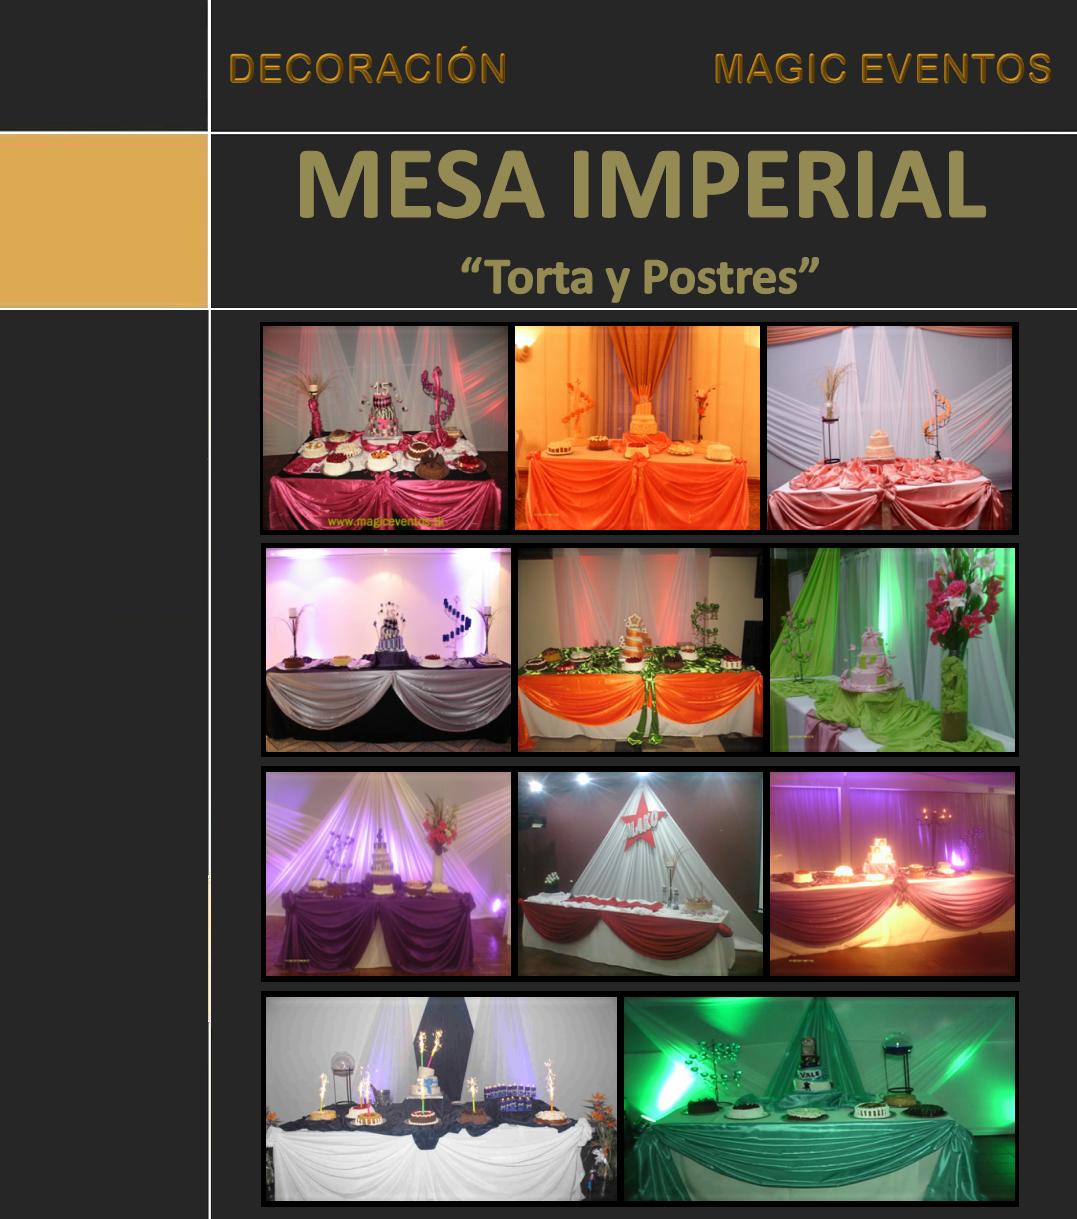 plantilla_decoracion_mesa_imperial_nuevo_magic_eventos_2013.jpg